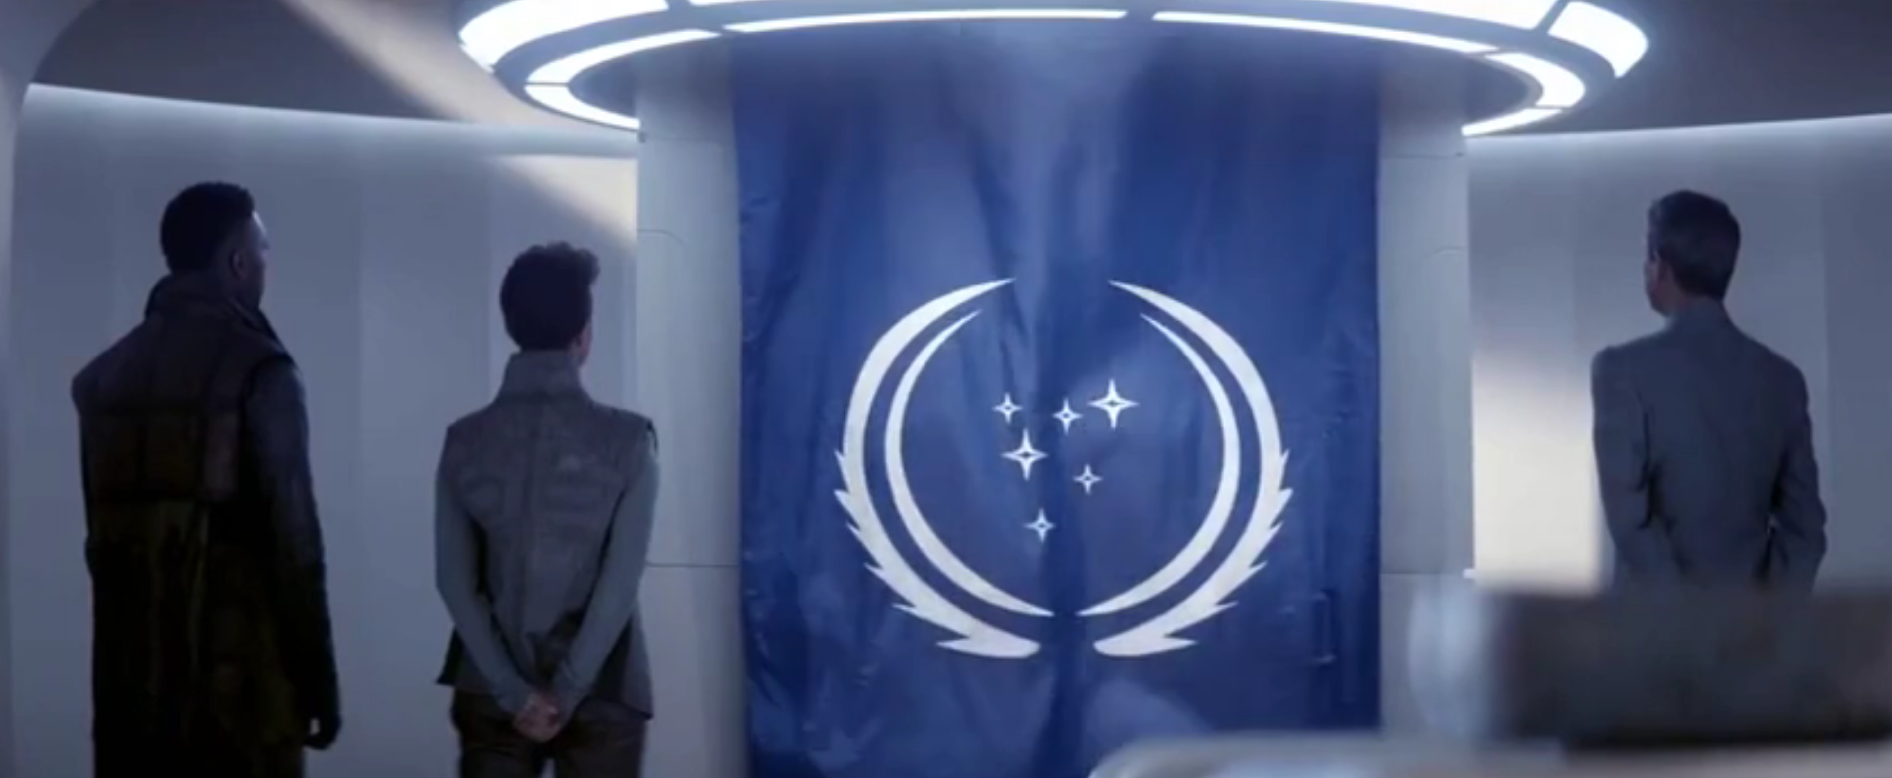 Первый трейлер третьего сезона Star Trek: Discovery показывает прыжок в червоточину